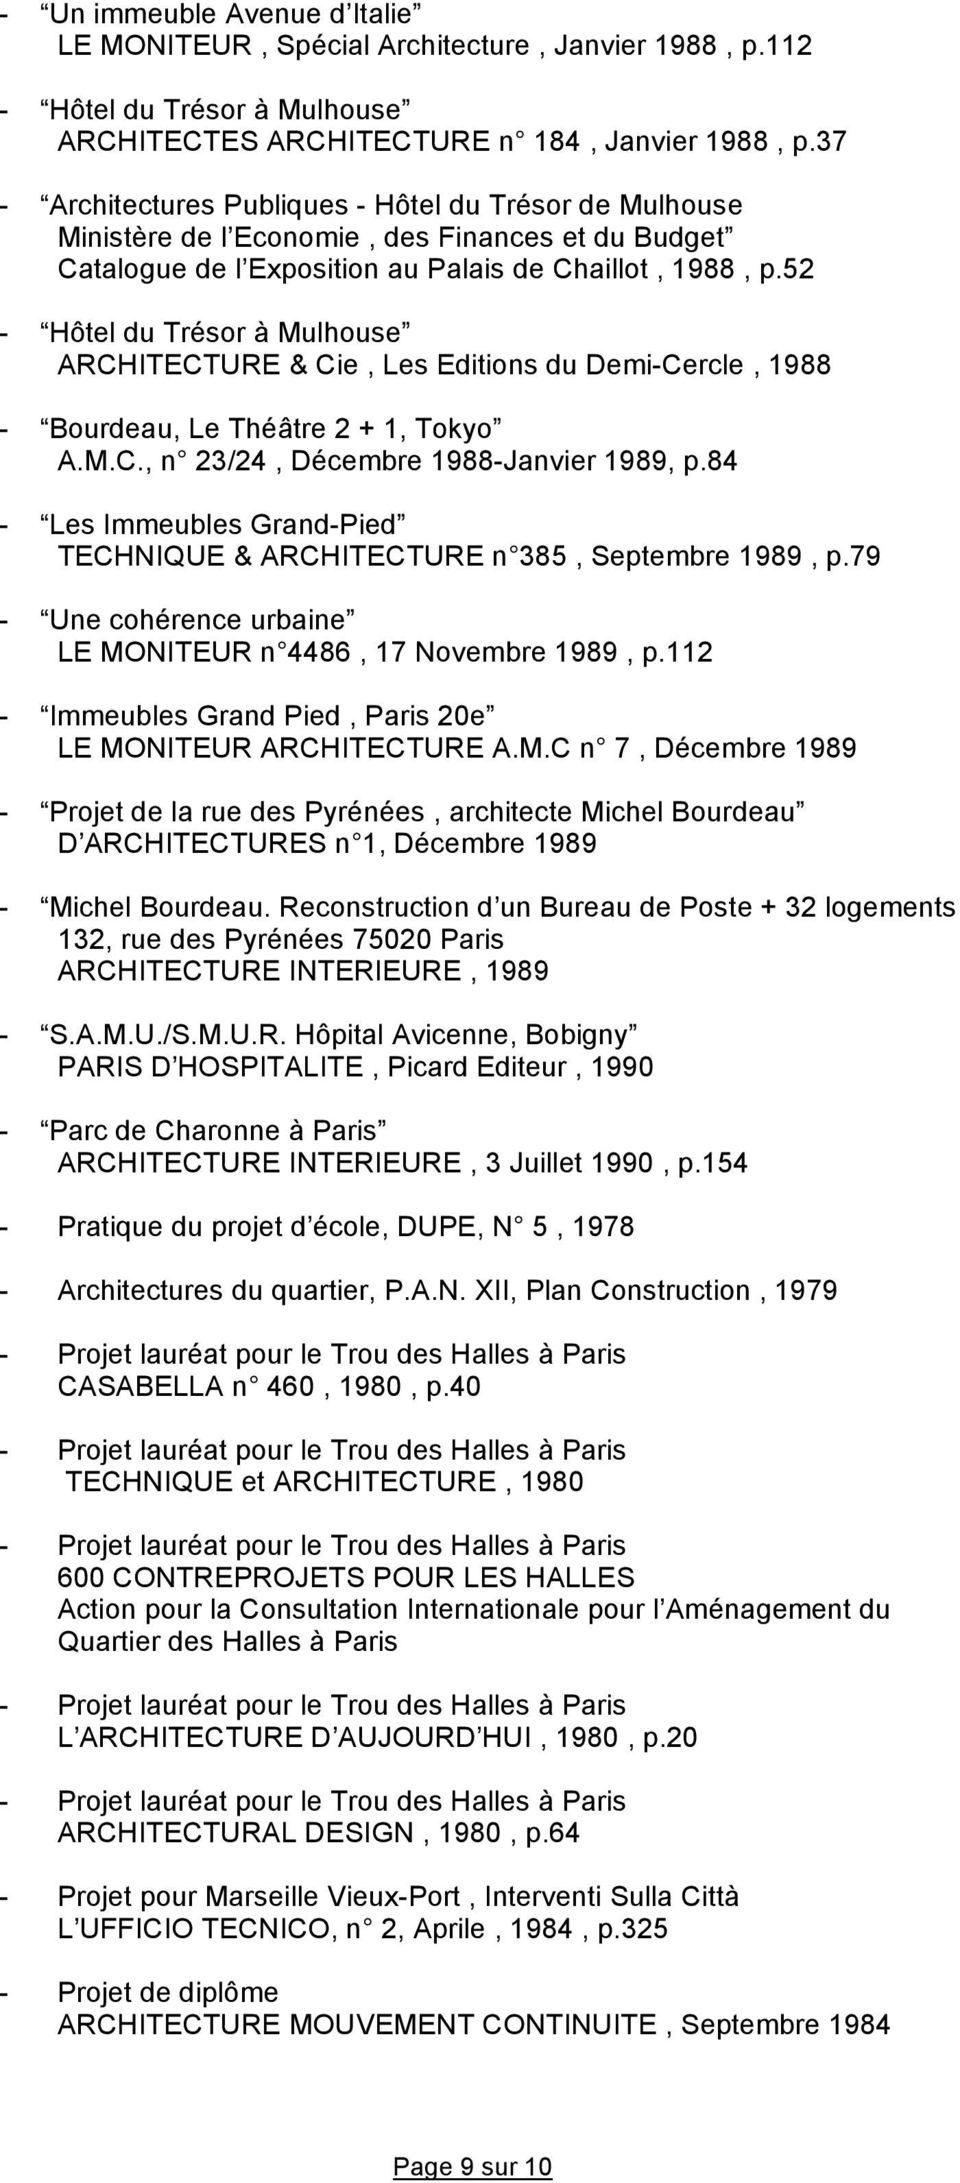 52 - Hôtel du Trésor à Mulhouse ARCHITECTURE & Cie, Les Editions du Demi-Cercle, 1988 - Bourdeau, Le Théâtre 2 + 1, Tokyo A.M.C., n 23/24, Décembre 1988-Janvier 1989, p.